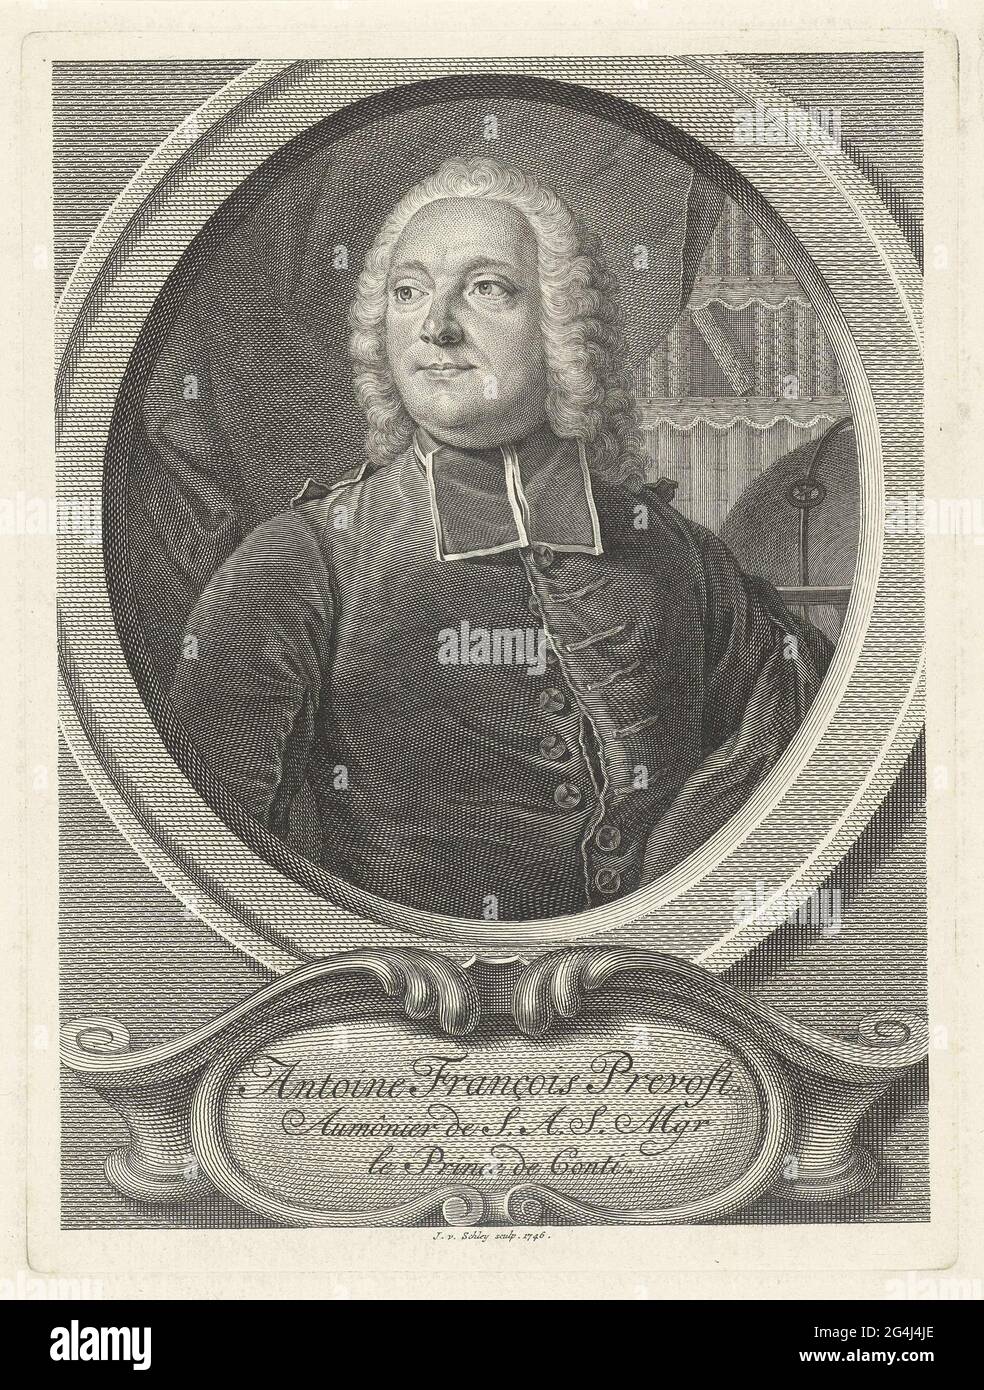 . Porträt des französischen Autors Antoine François Prevost, auch bekannt als Abbé Prévost. Er ist in Kleid mit BEF gekleidet. Ein Bücherregal im Hintergrund. In der Kartusche sind Name und Titel. Stockfoto